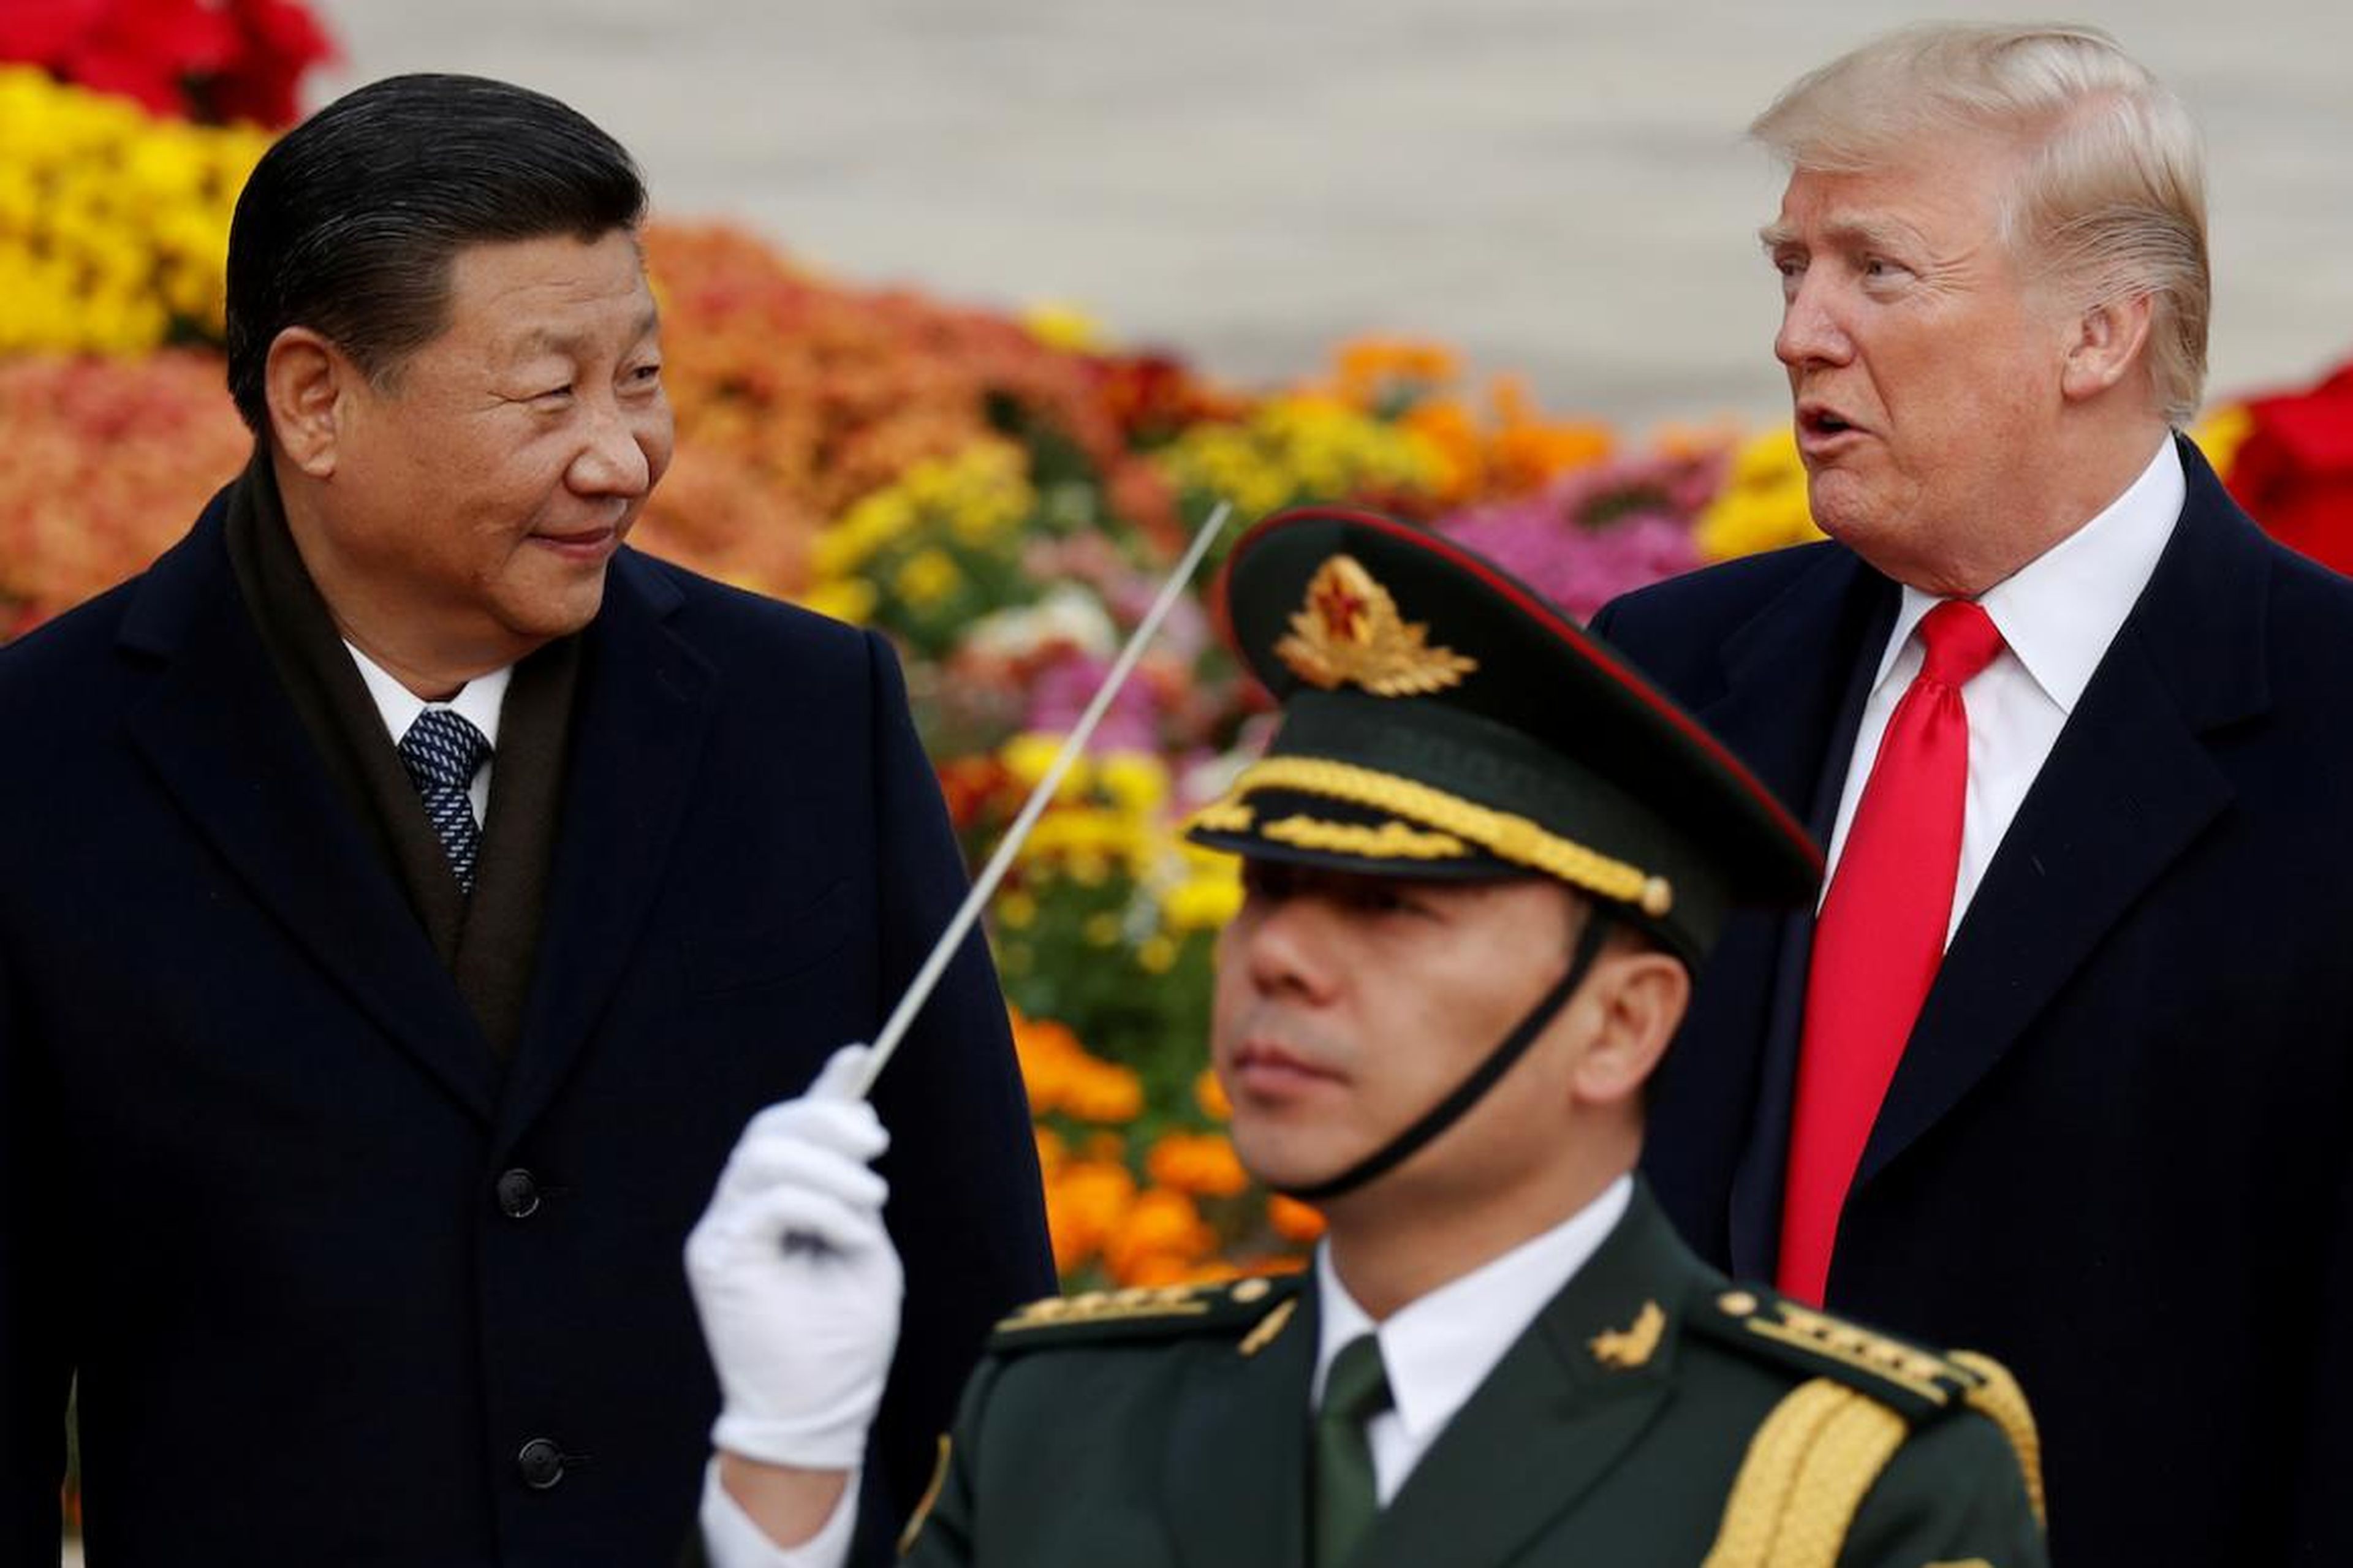 El veto de Trump a Huawei en Estados Unidos podría poner en peligro el negocio de Apple en China